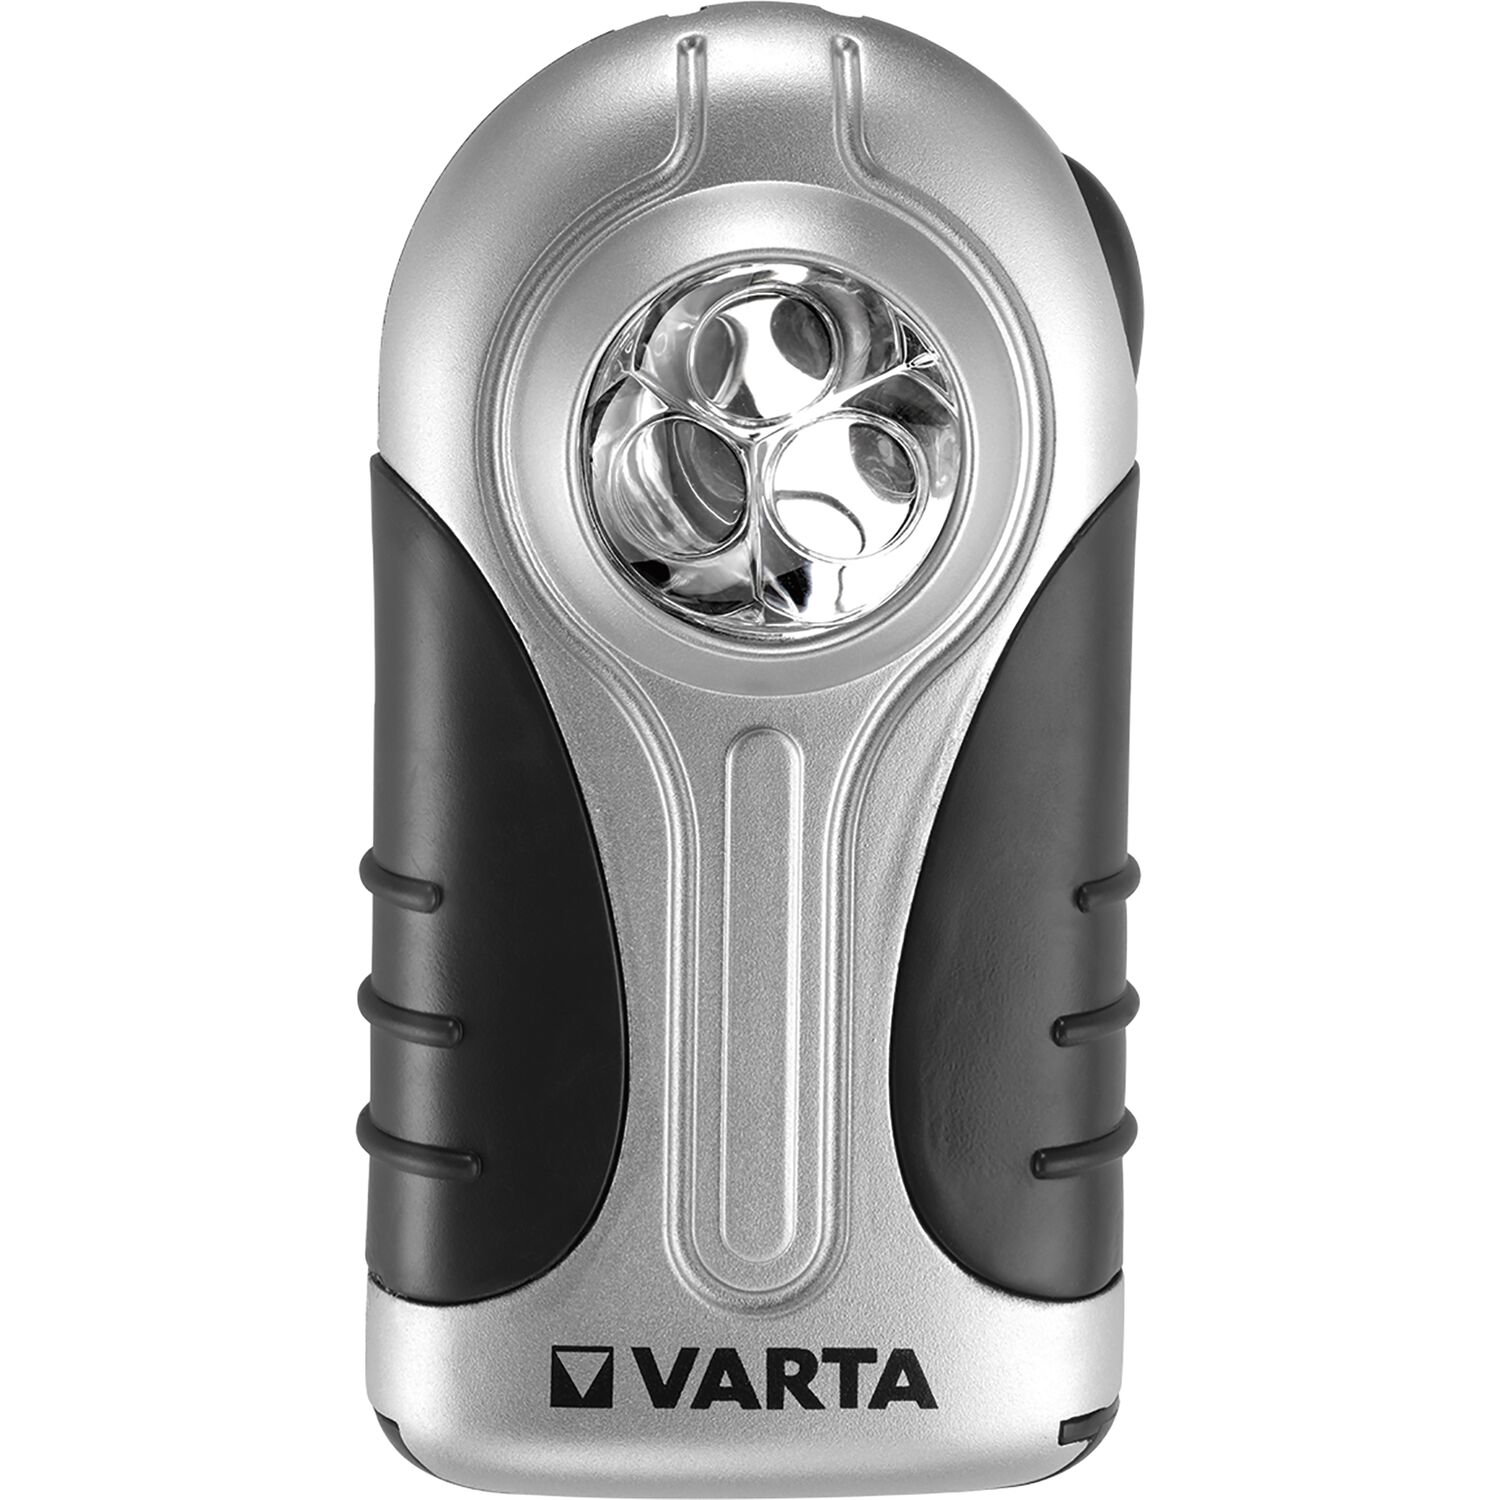 Varta Silver LED Taschenlampe (Flachleuchte) mit Halteclip und 3x Batterien  - vasalat